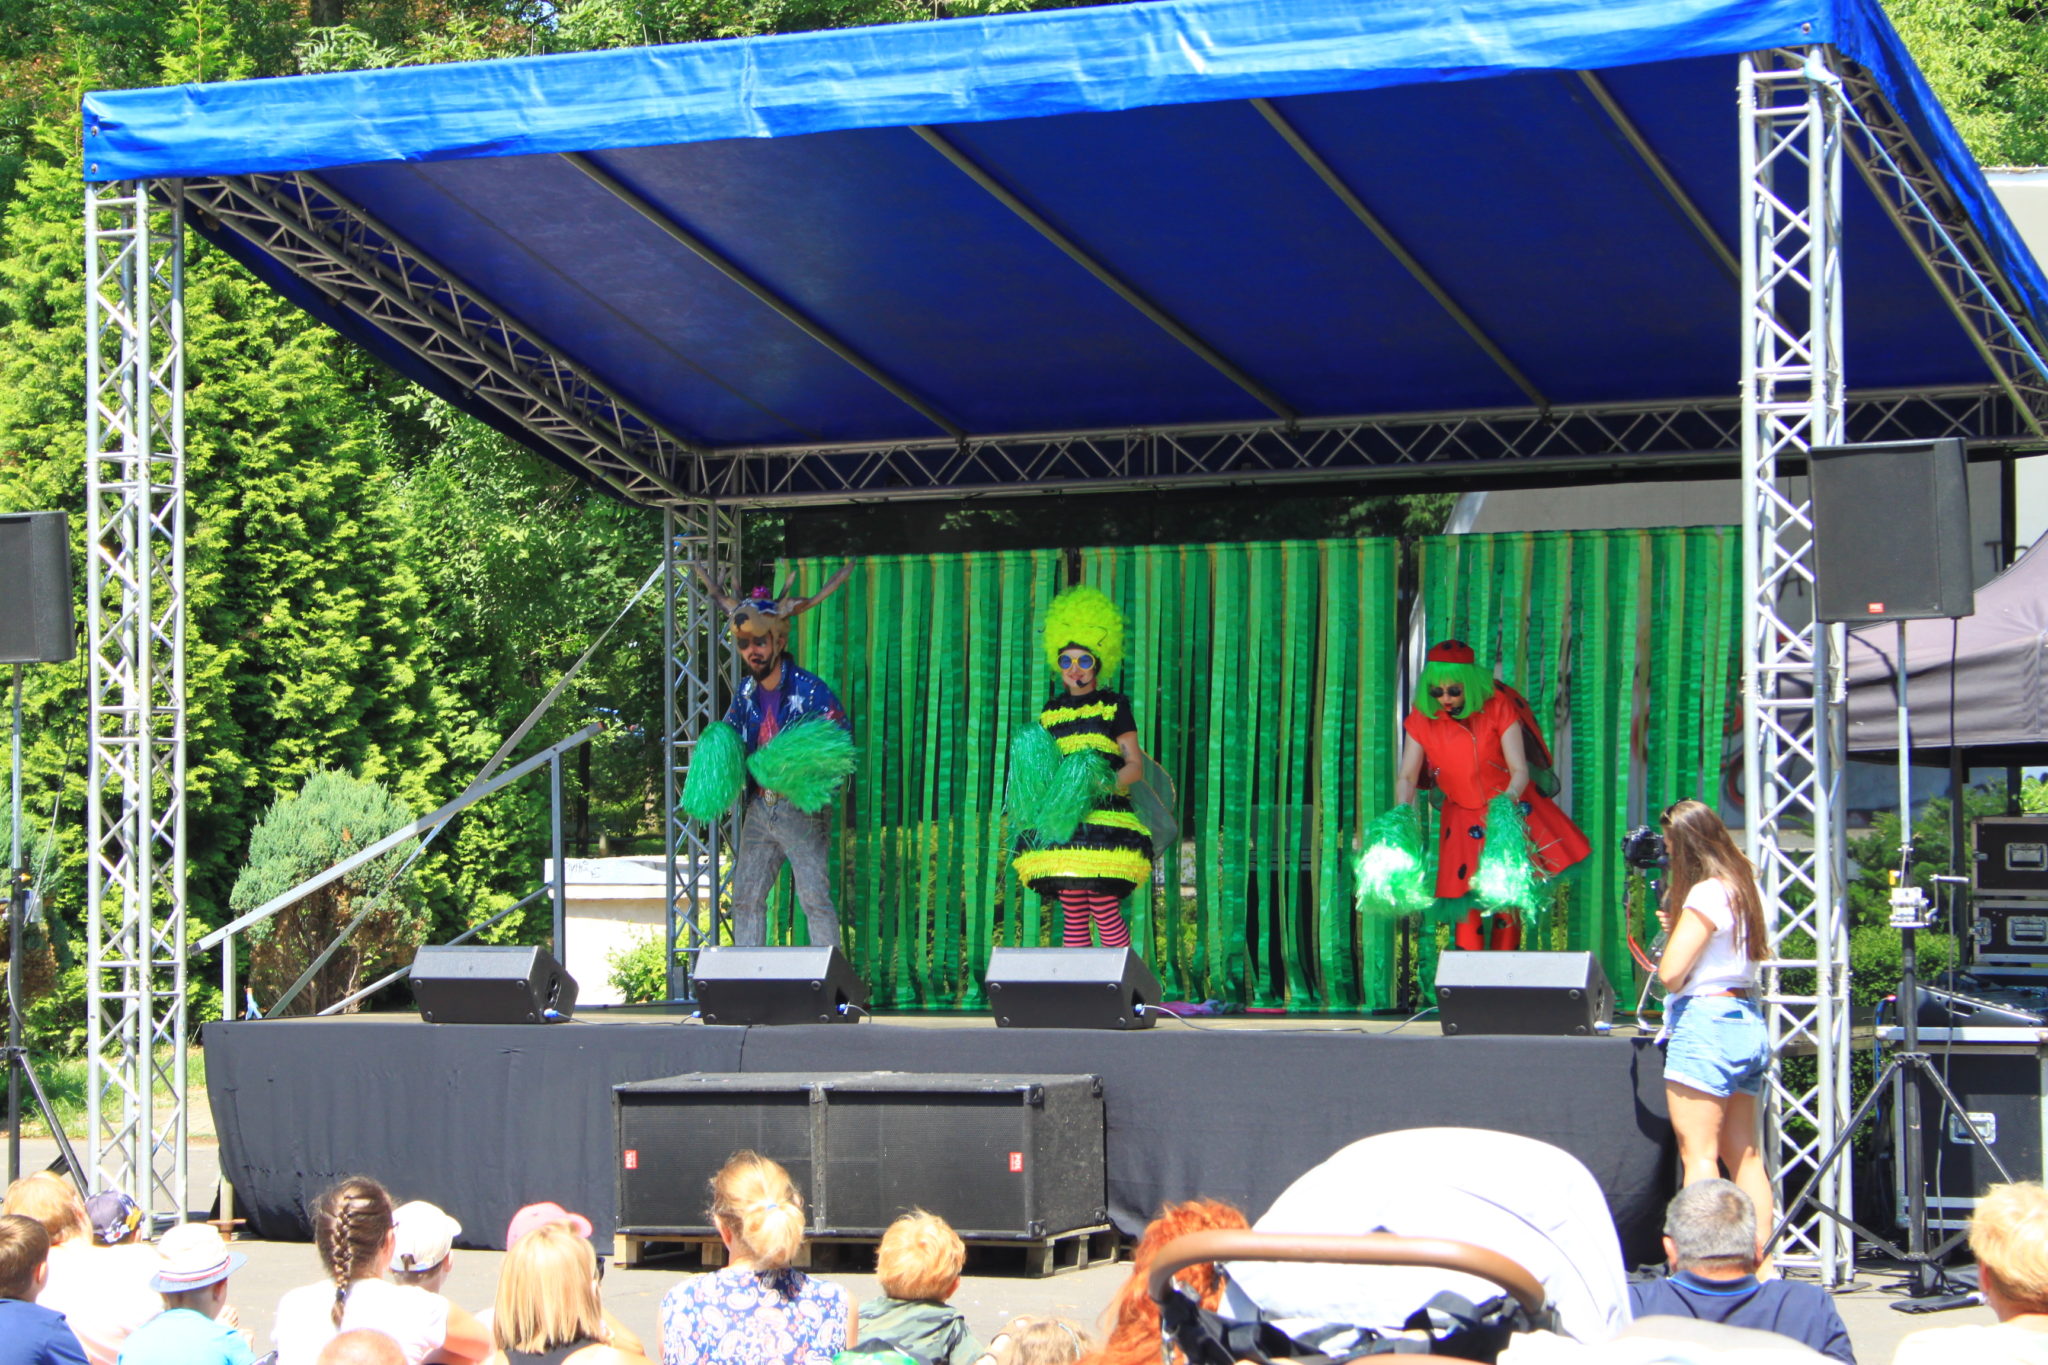 trzy osoby w kostiumach stoją na scenie